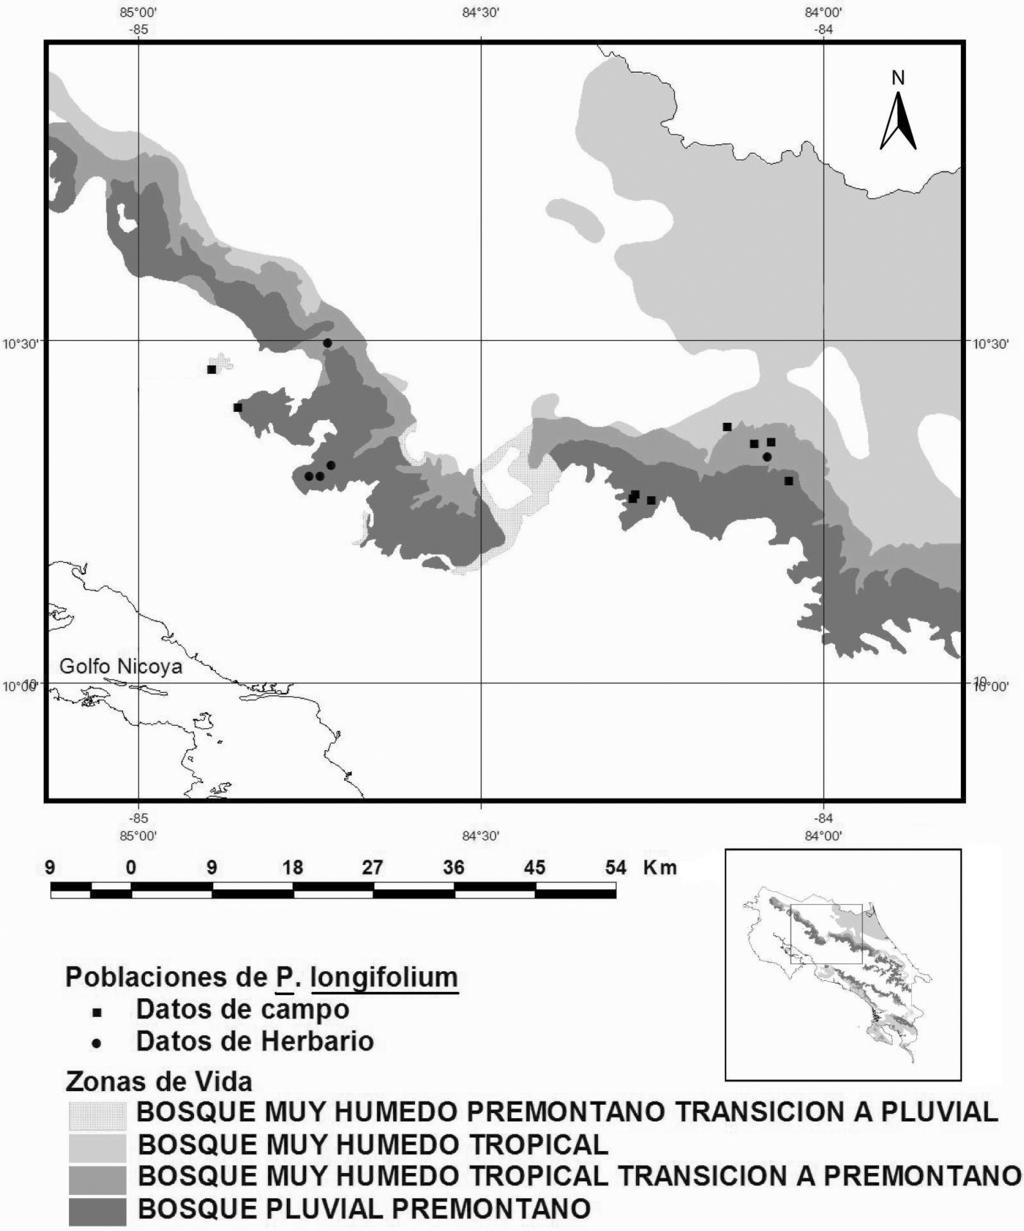 MUÑOZ & WARNER - Poblaciones silvestres de Phragmipedium 67 La Palma pero sin coordenadas geográficas. En el Herbario Nacional se encuentran muestras de dos plantas de P.